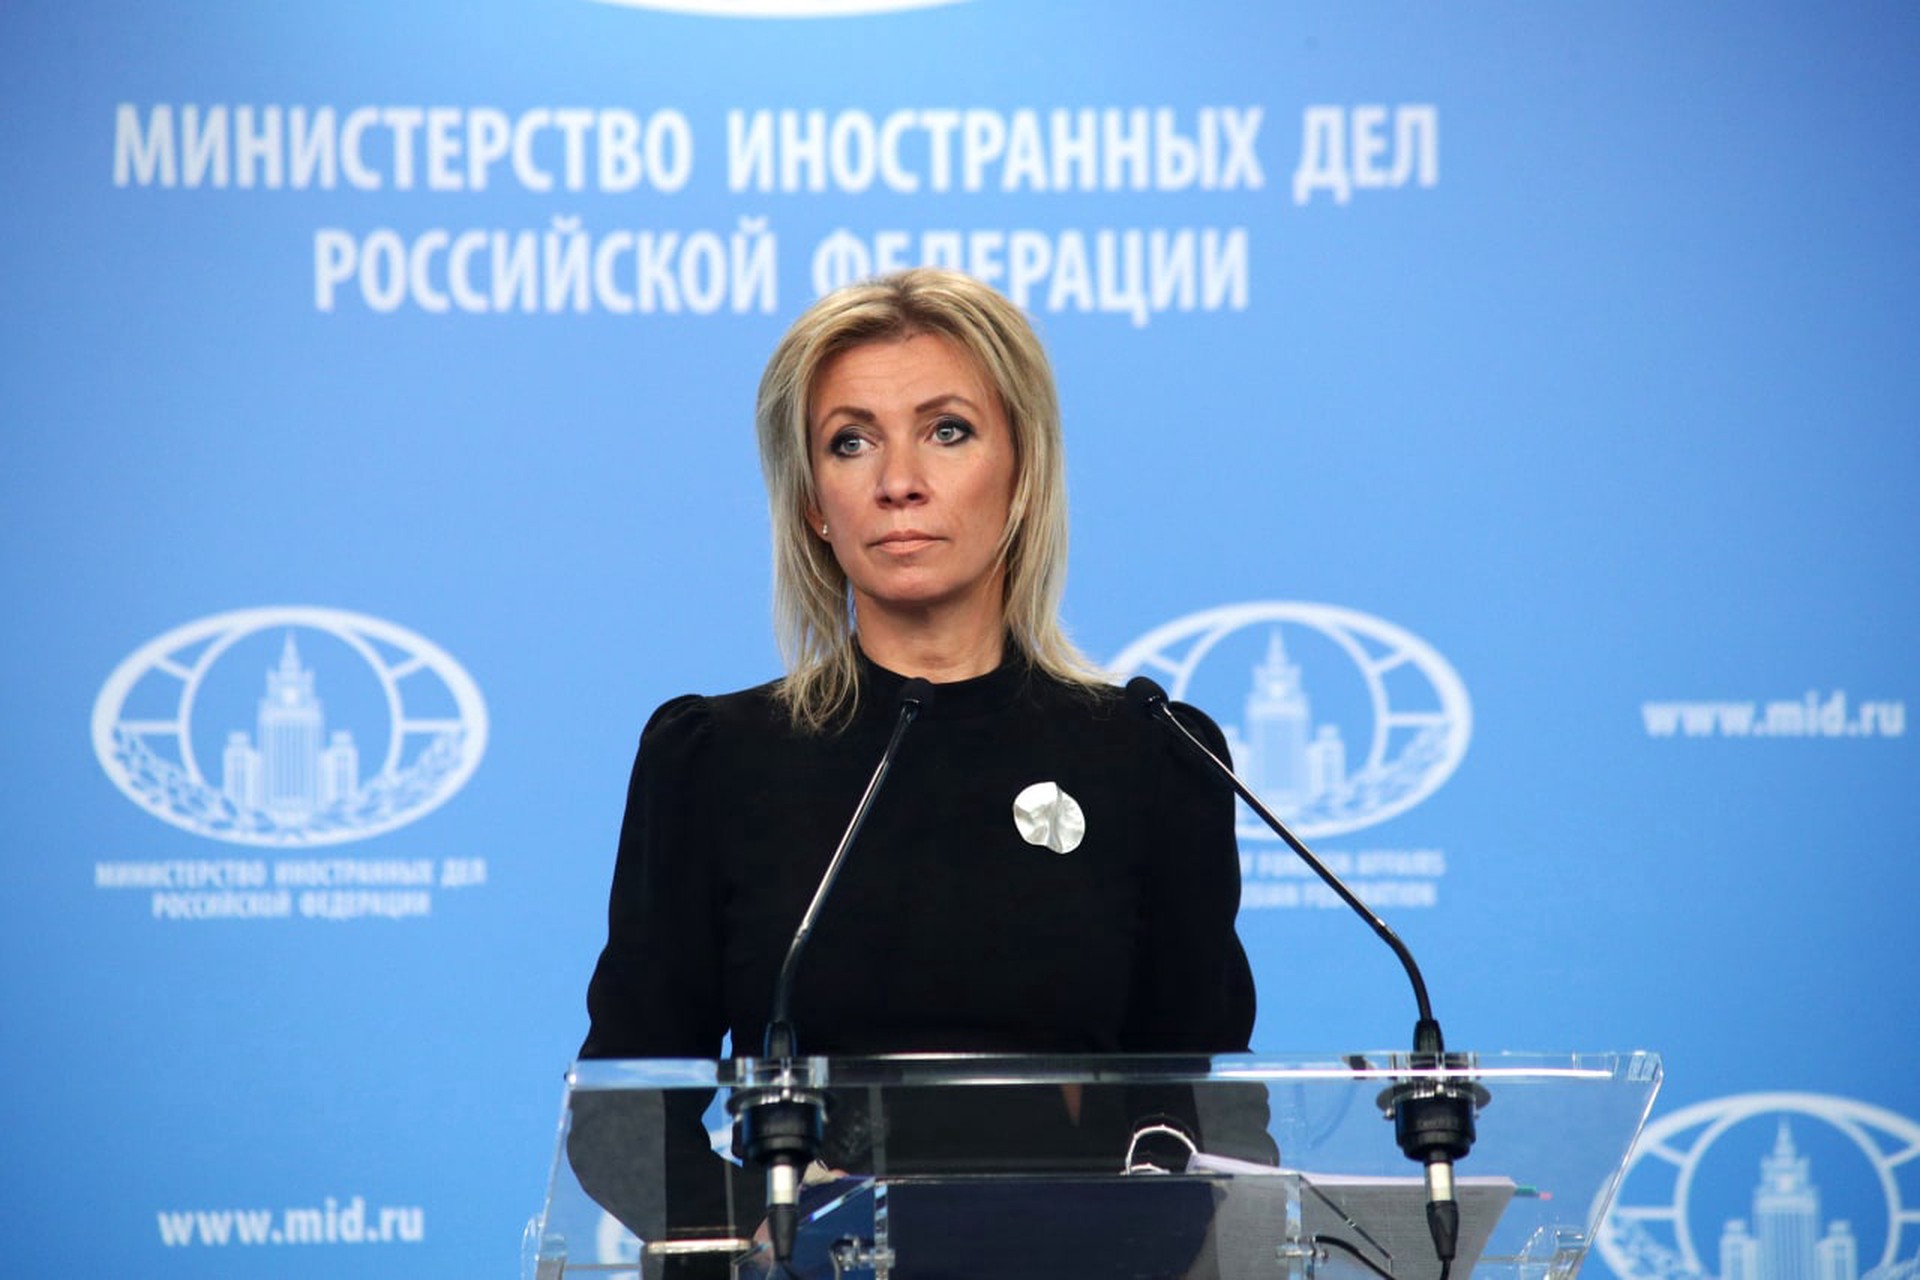 Захарова: вопрос проведения референдума в Южной Осетии о присоединении к РФ требует тщательного анализа